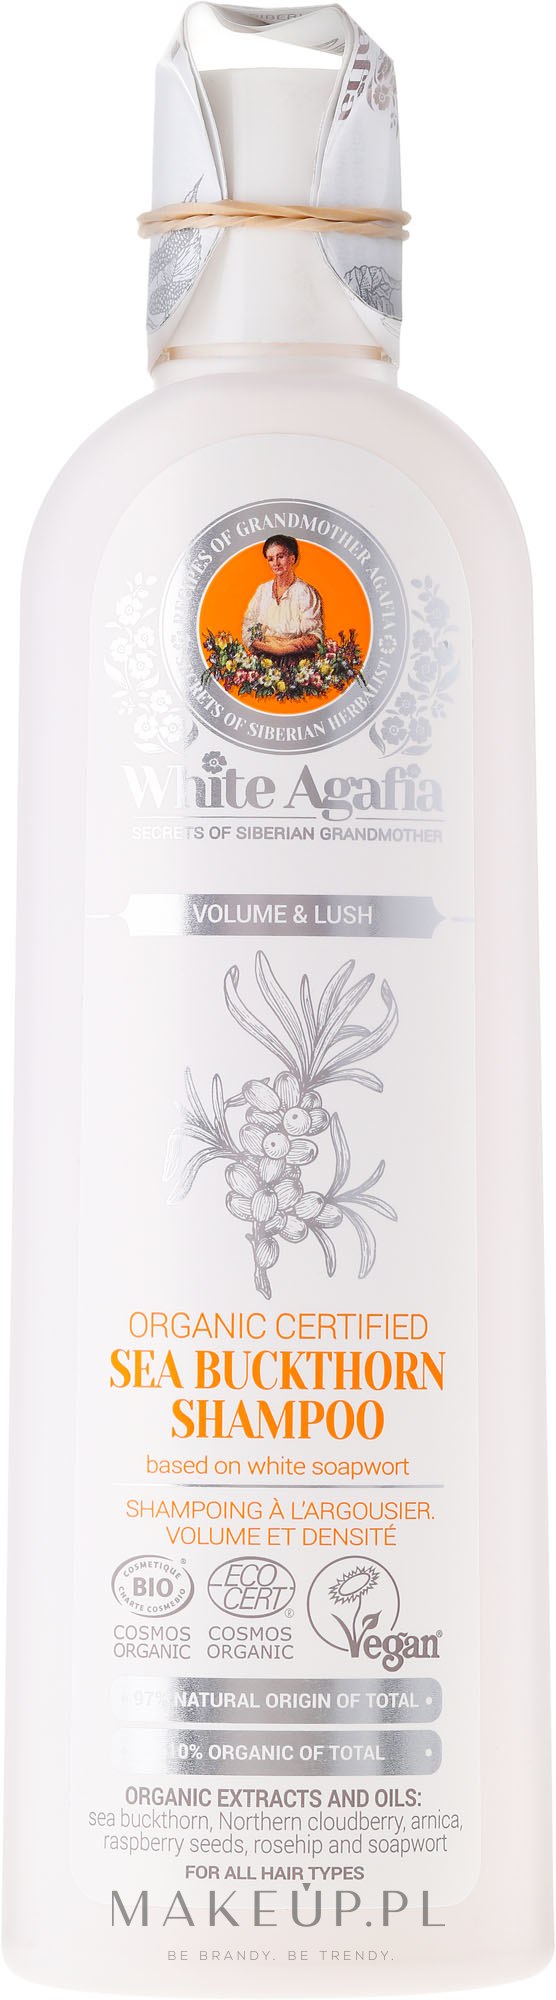 white agafia szampon rokitnikowy wizaz